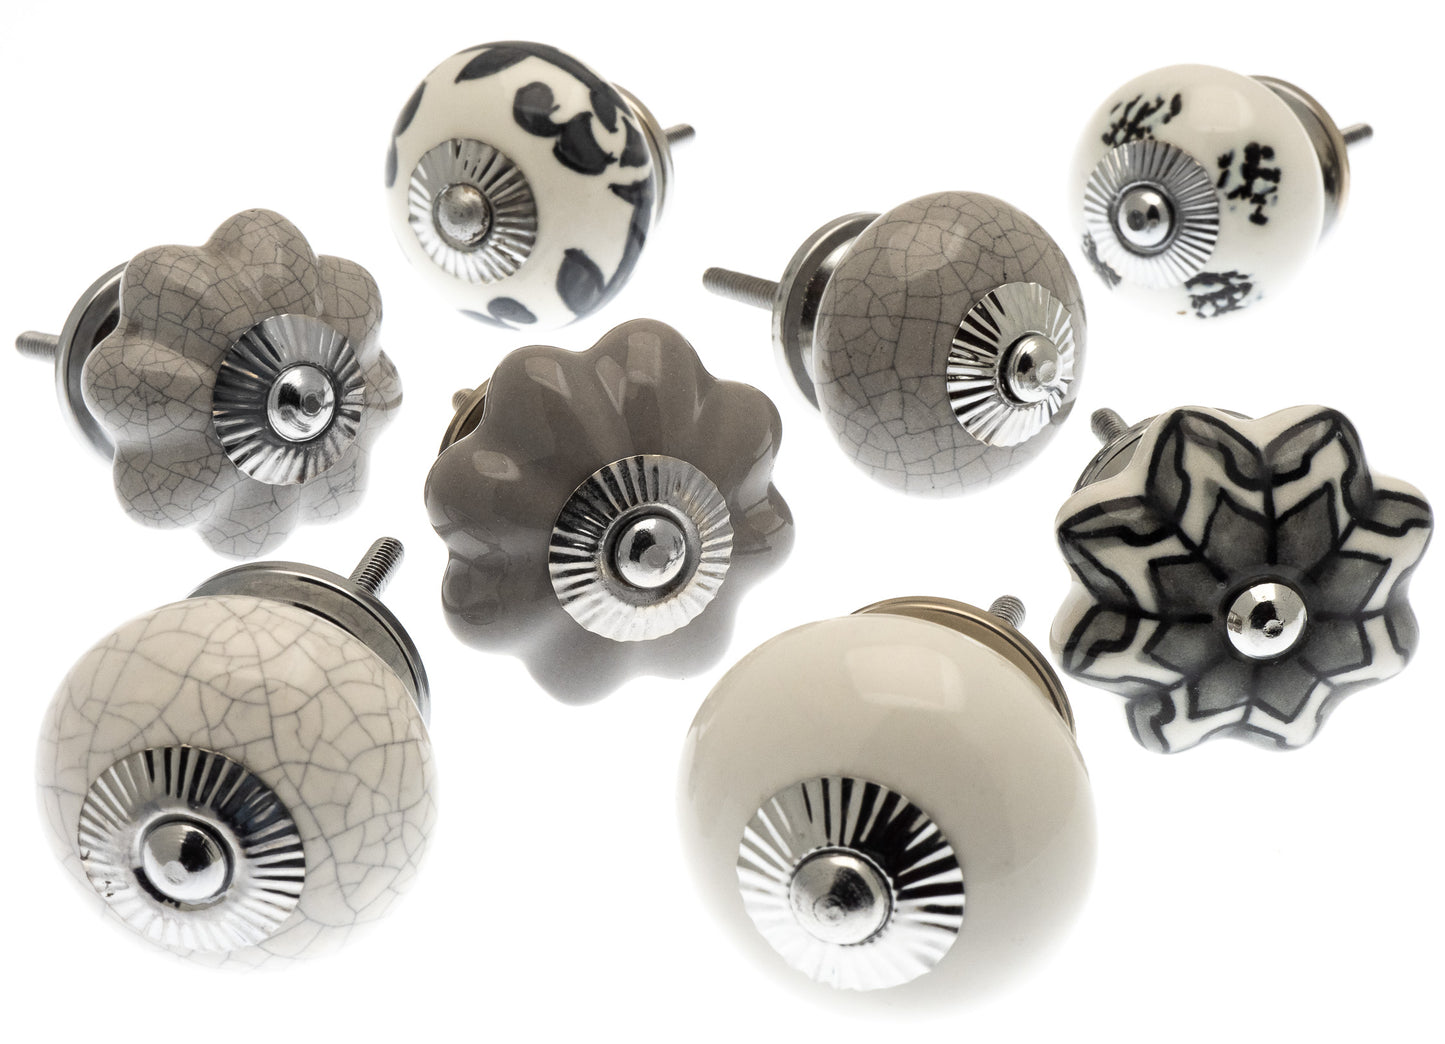 Boutons de placard en céramique dans 8 jolies nuances de gris subtils